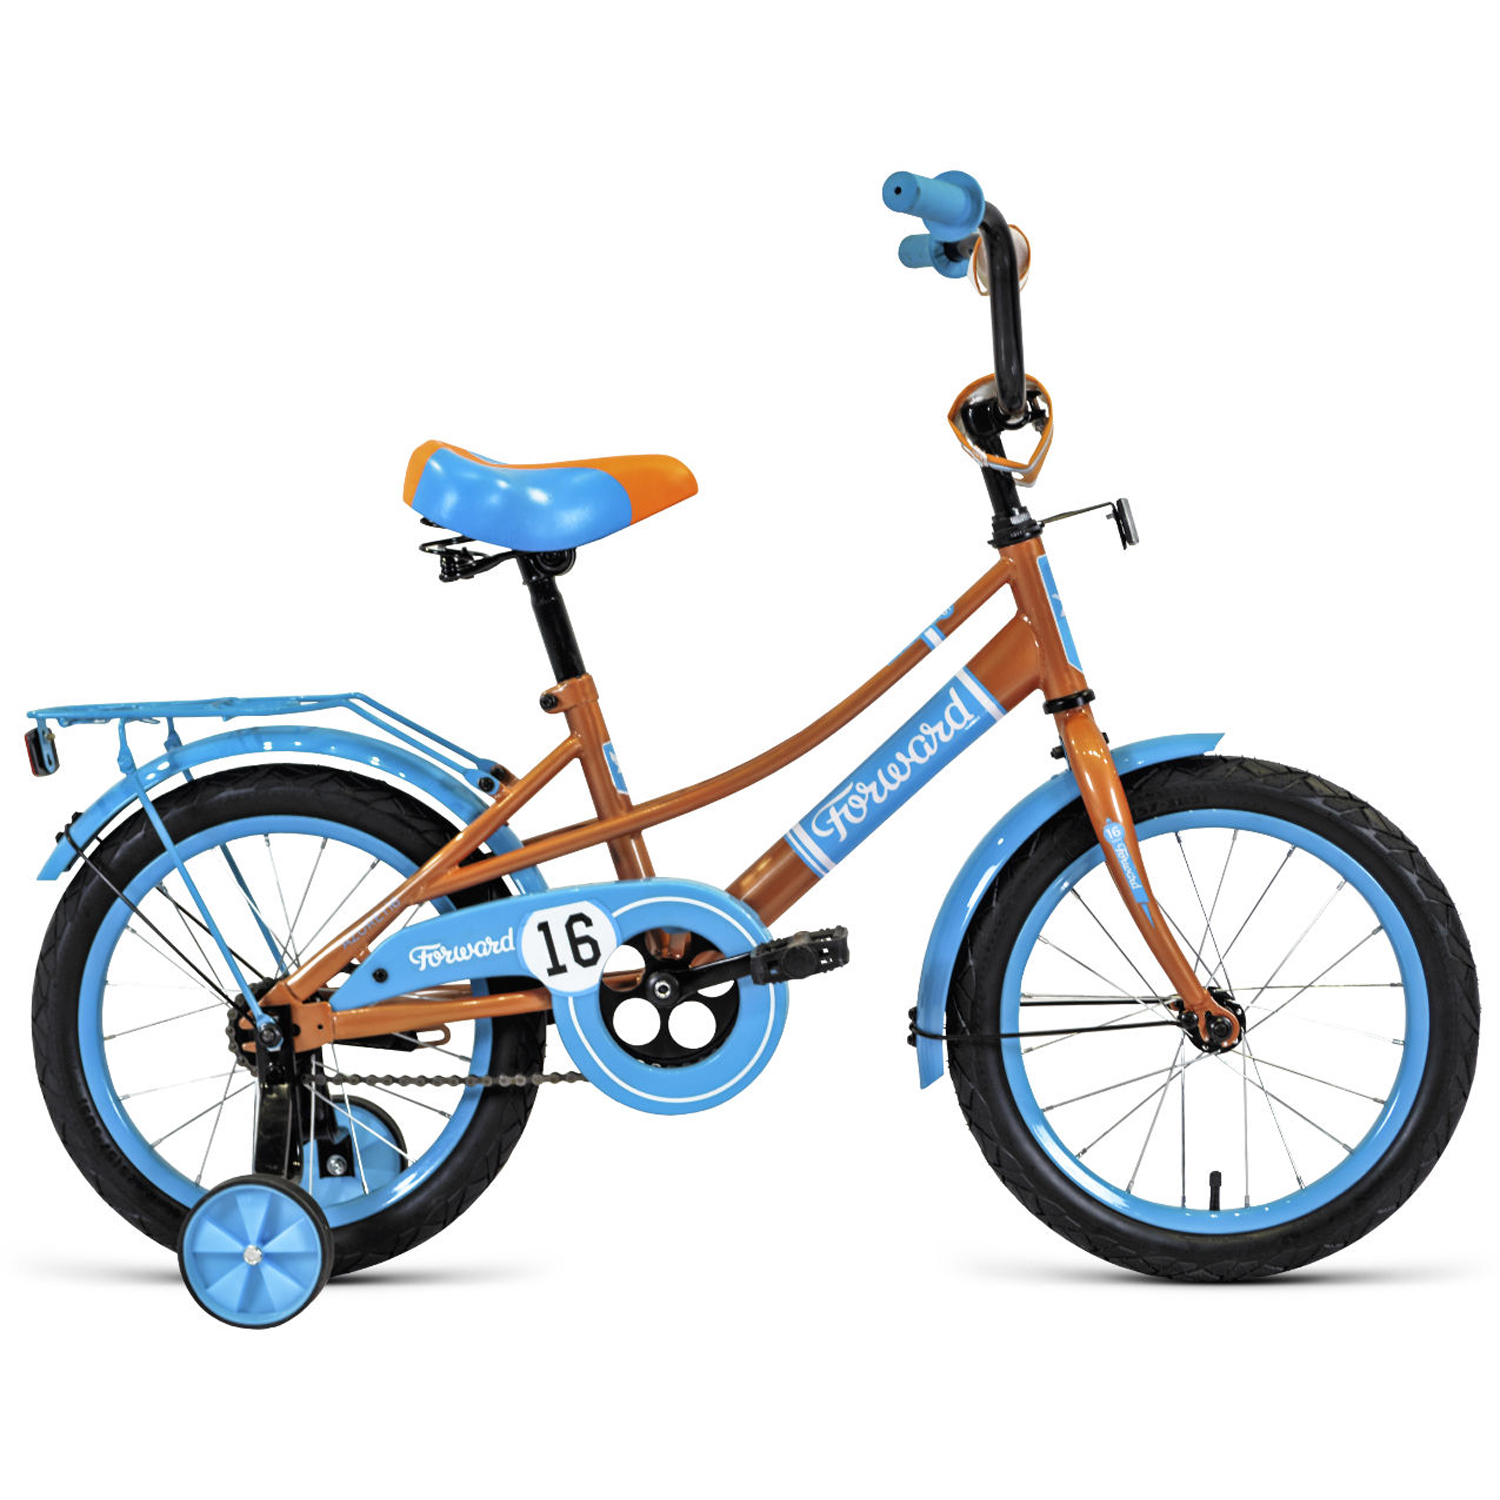 Двухколесный велосипед Forward Azure 16 2021, бежевый/голубой велосипед двухколесный forward cosmo 12 2021